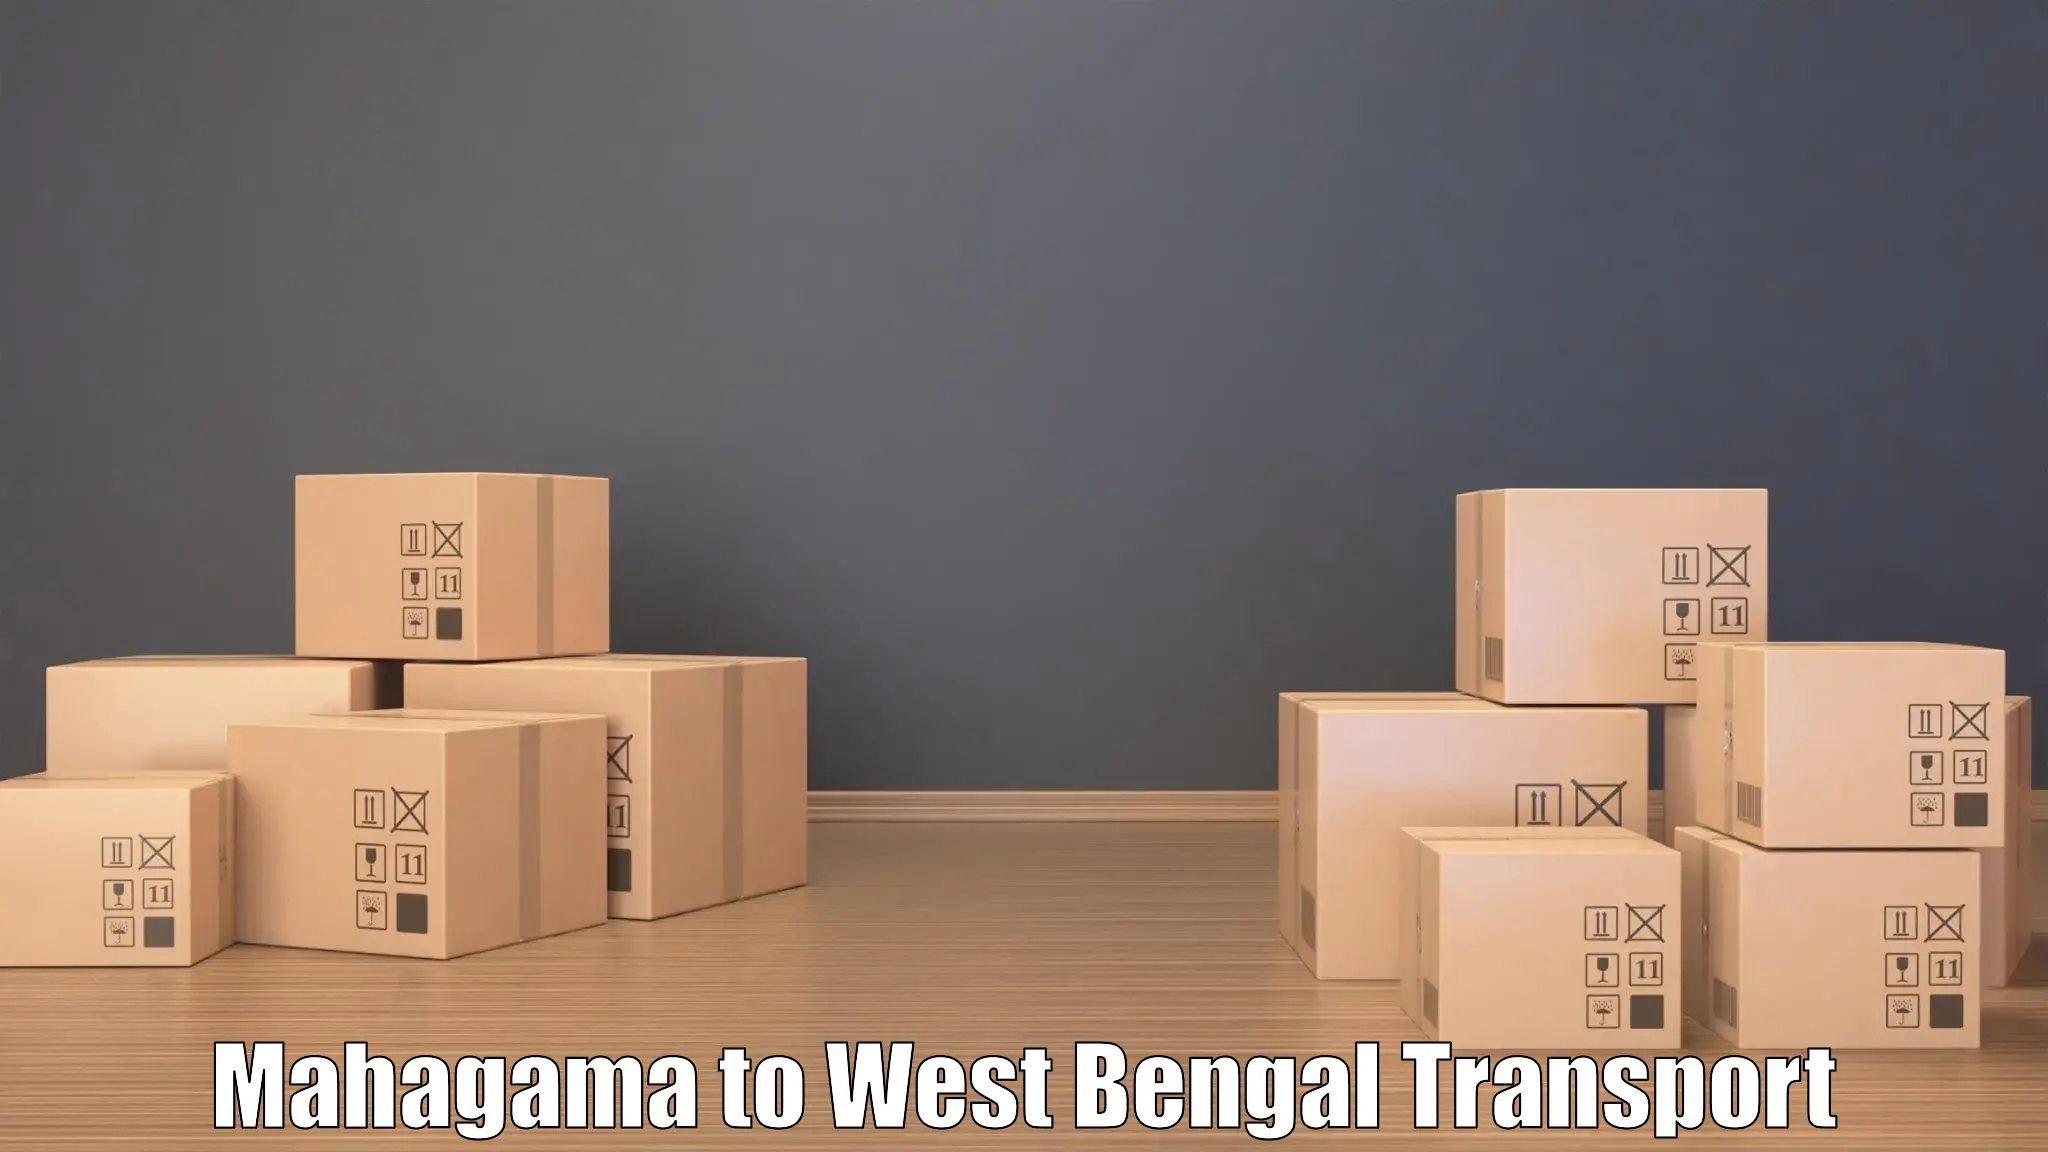 Transportation solution services Mahagama to Badkulla